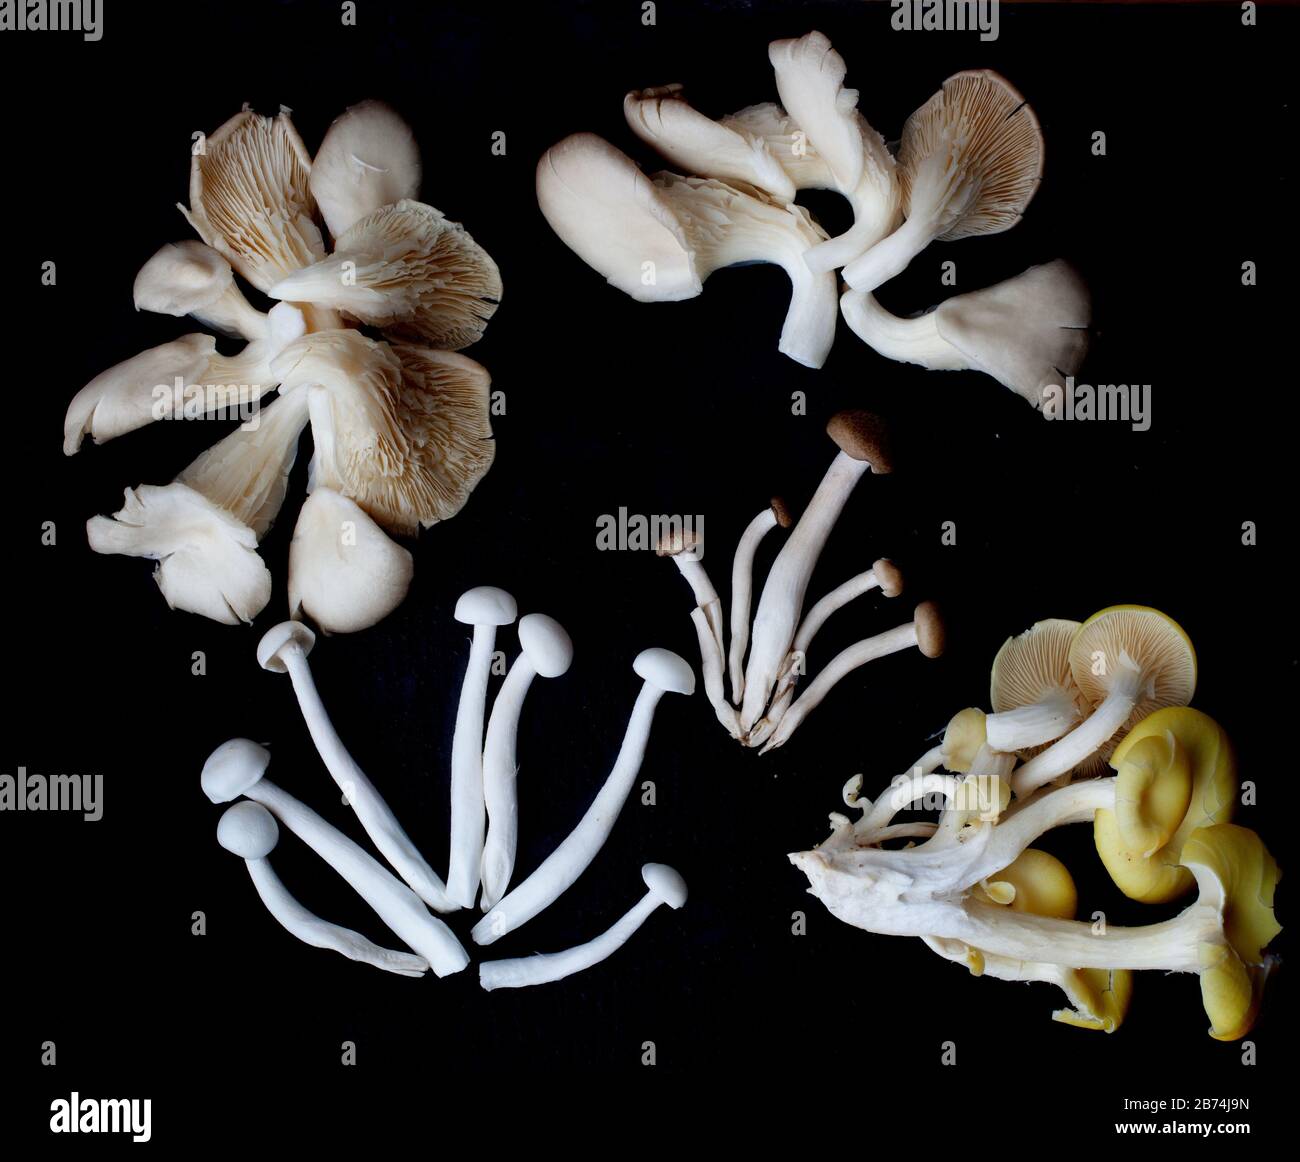 Les champignons mélangés se sont mis artistiquement sur un fond noir Banque D'Images